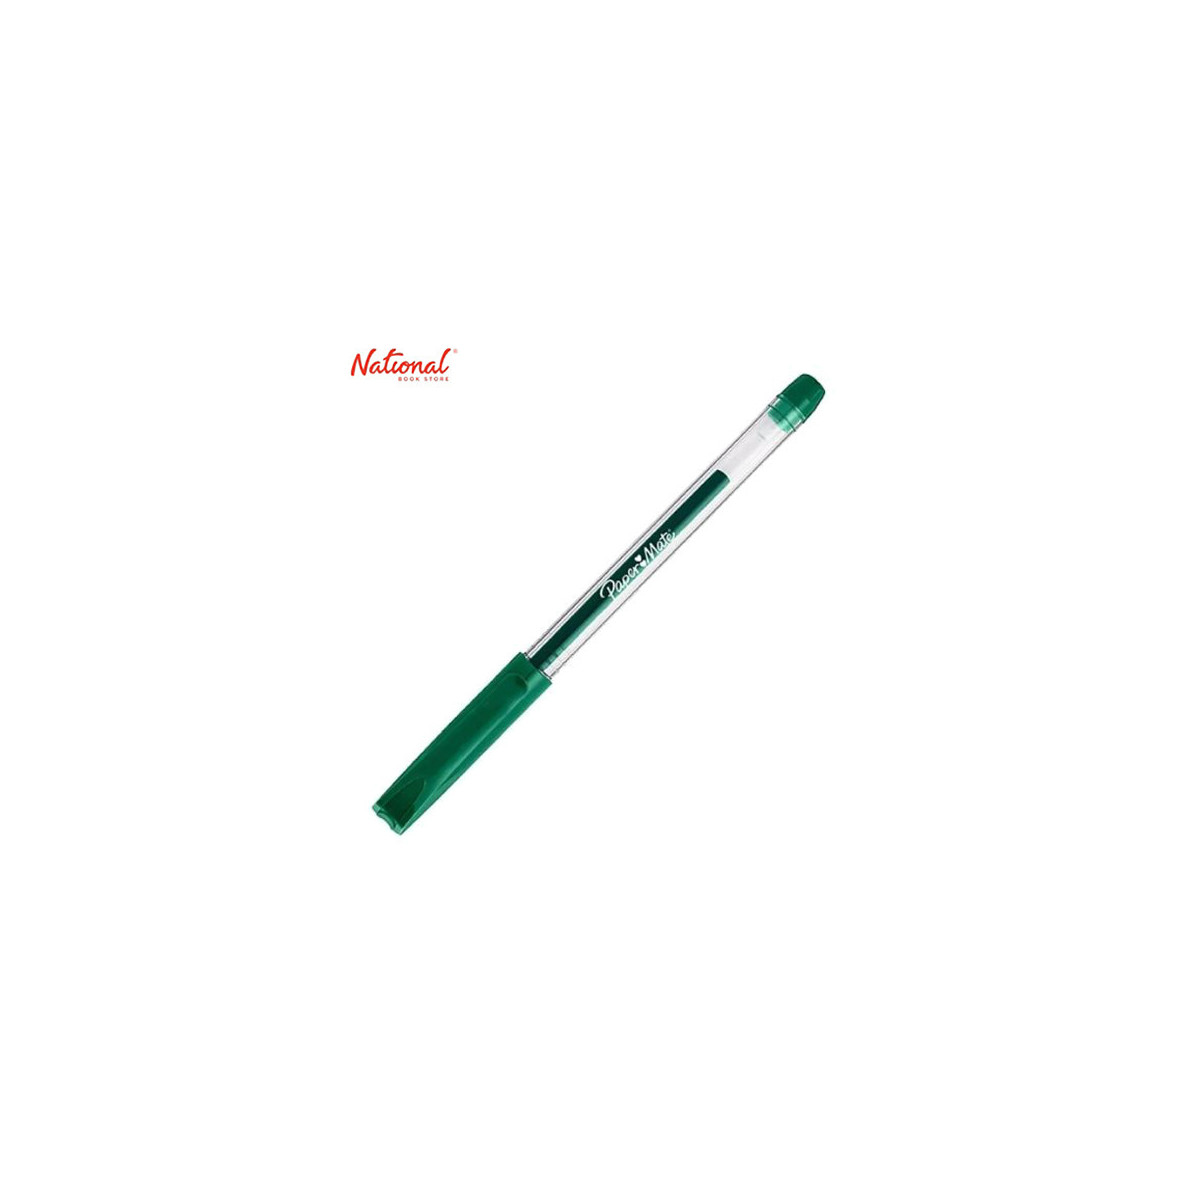 Papermate Jiffy Gel Pen Green 04020925